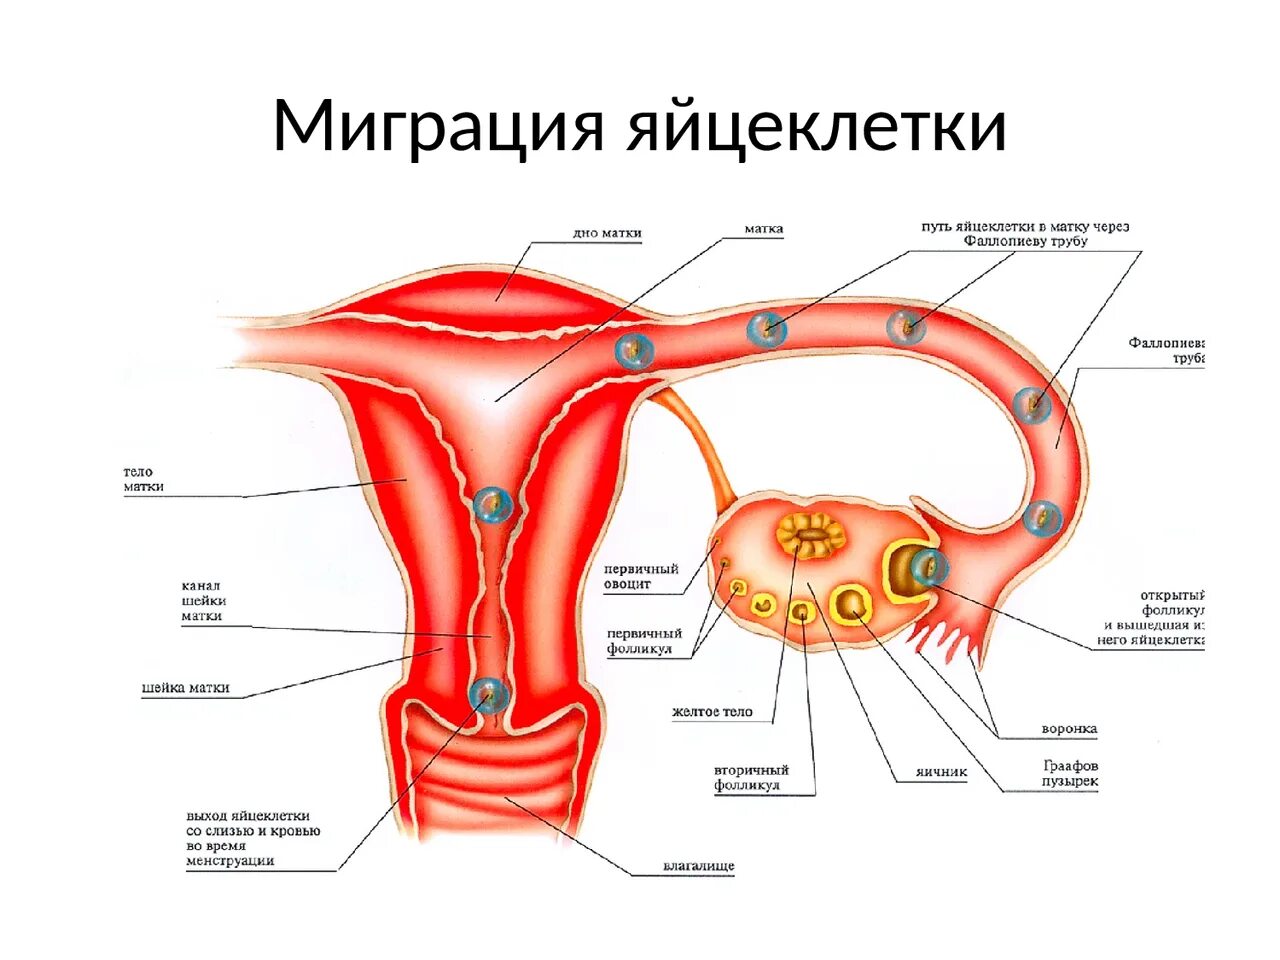 Оплодотворенная яйцеклетка в фаллопиевых трубах. Путь оплодотворенной яйцеклетки в матку. Перемещение яйцеклетки по маточной трубе. Путь движения яйцеклетки из яичника.